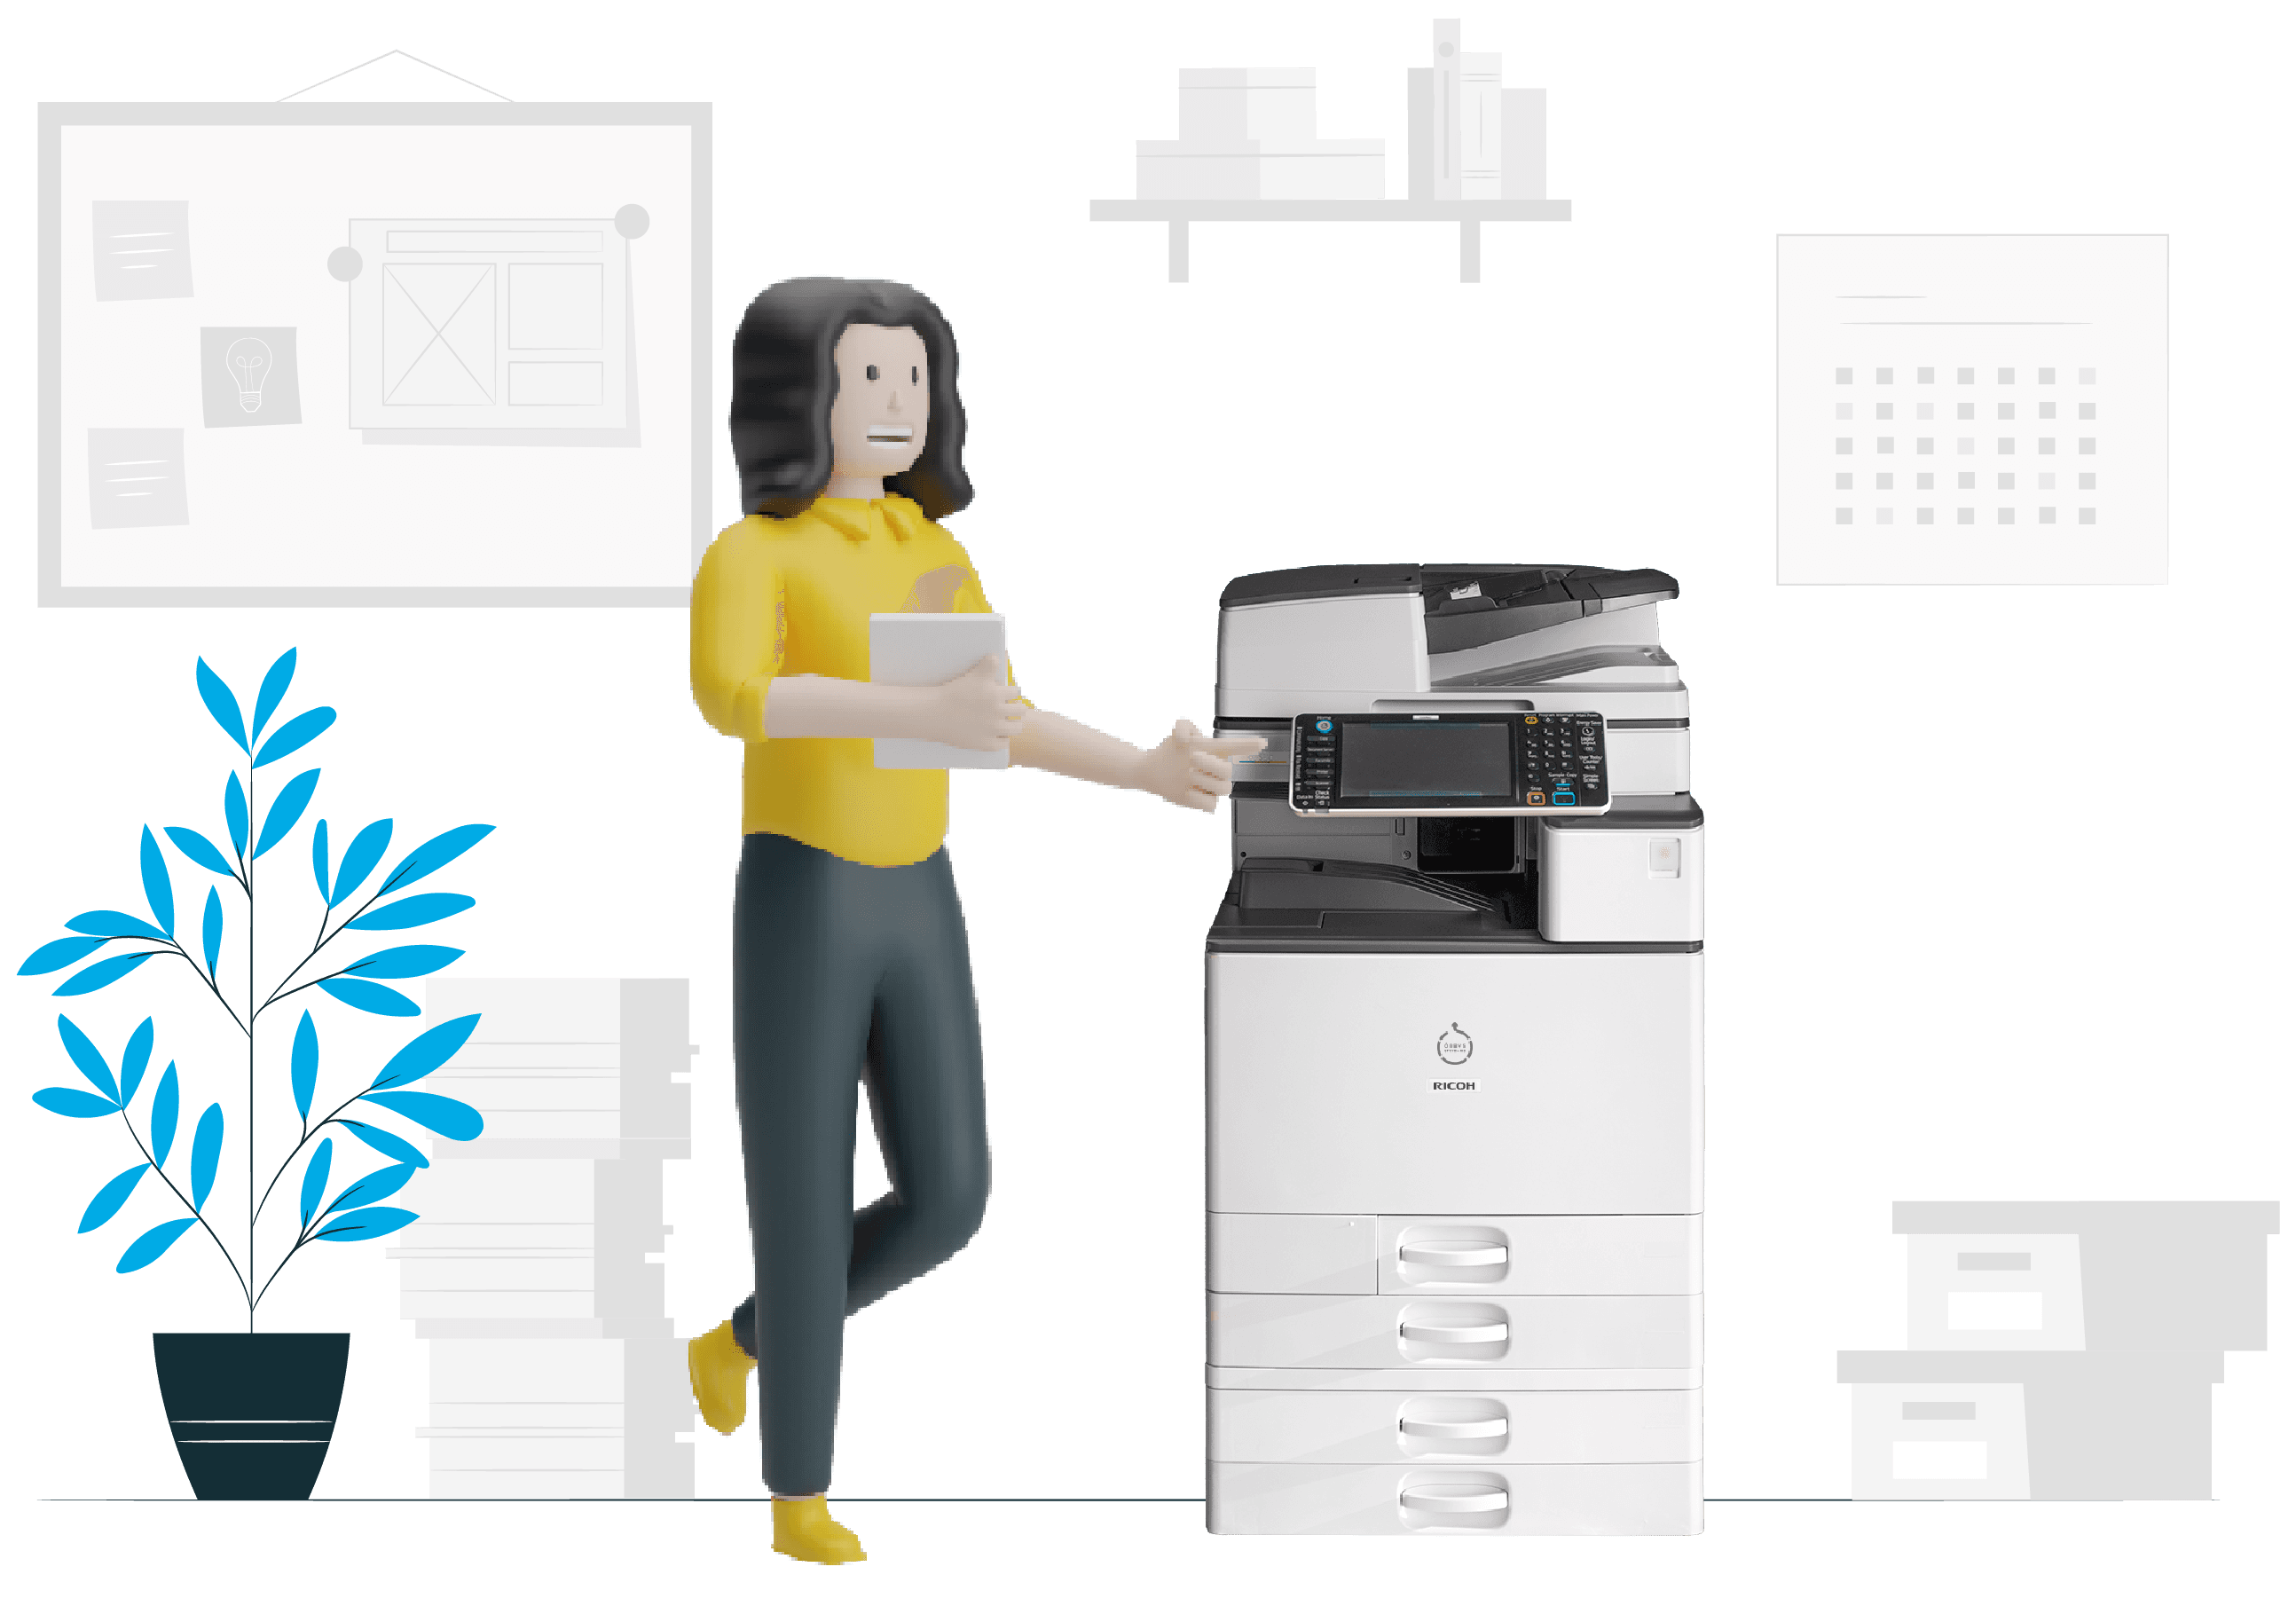 Series 4 B&W multifunction laser printer